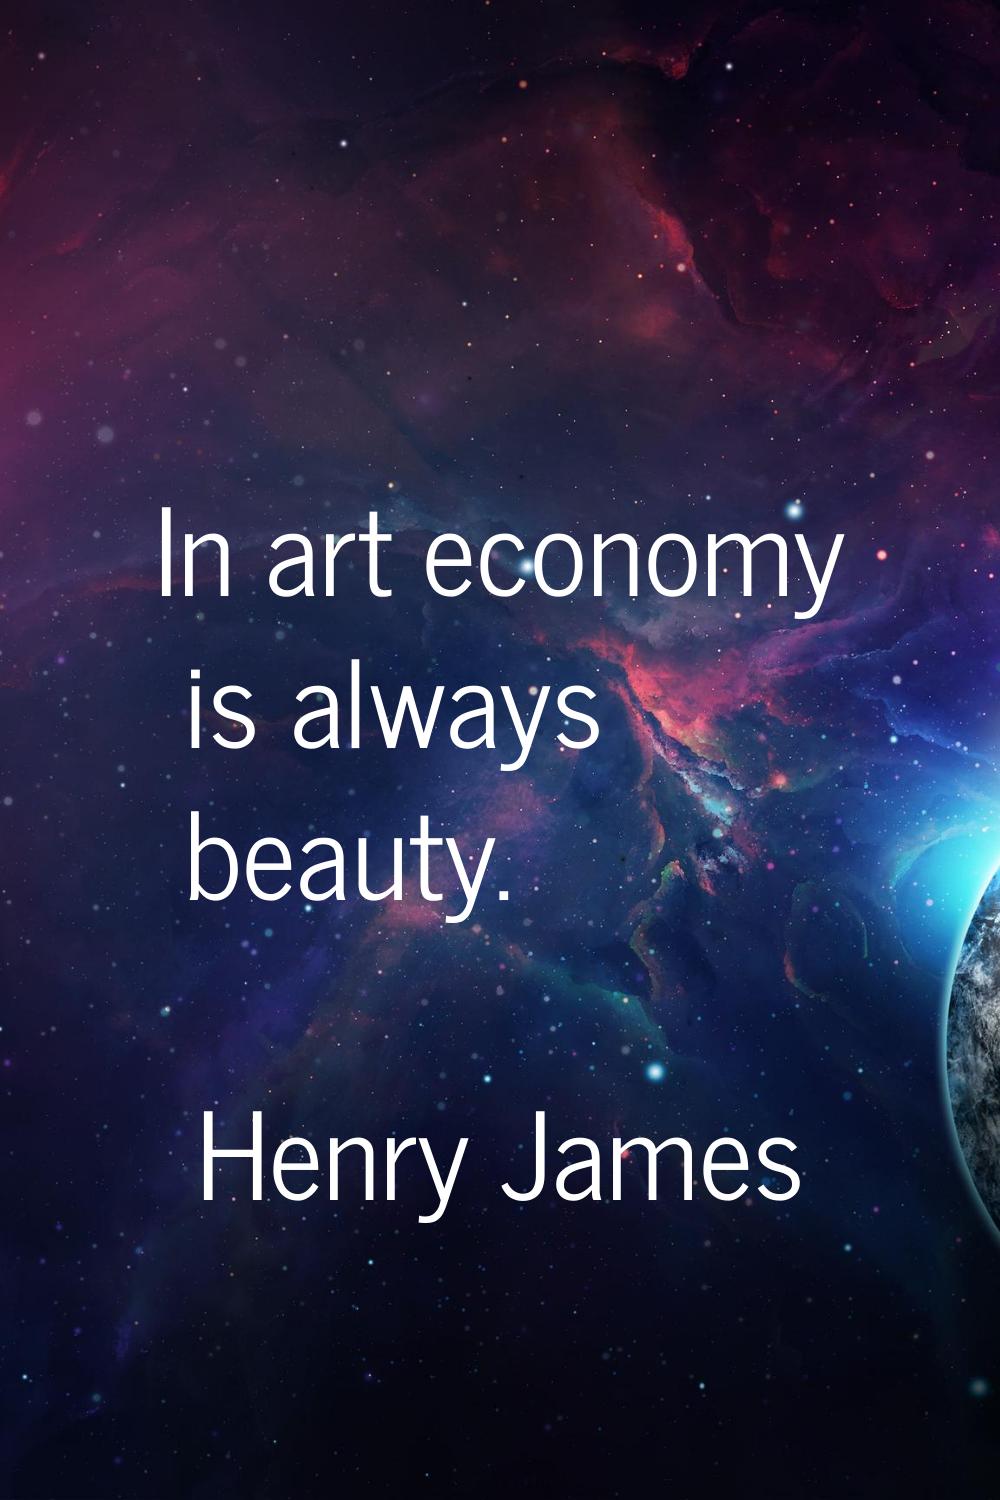 In art economy is always beauty.